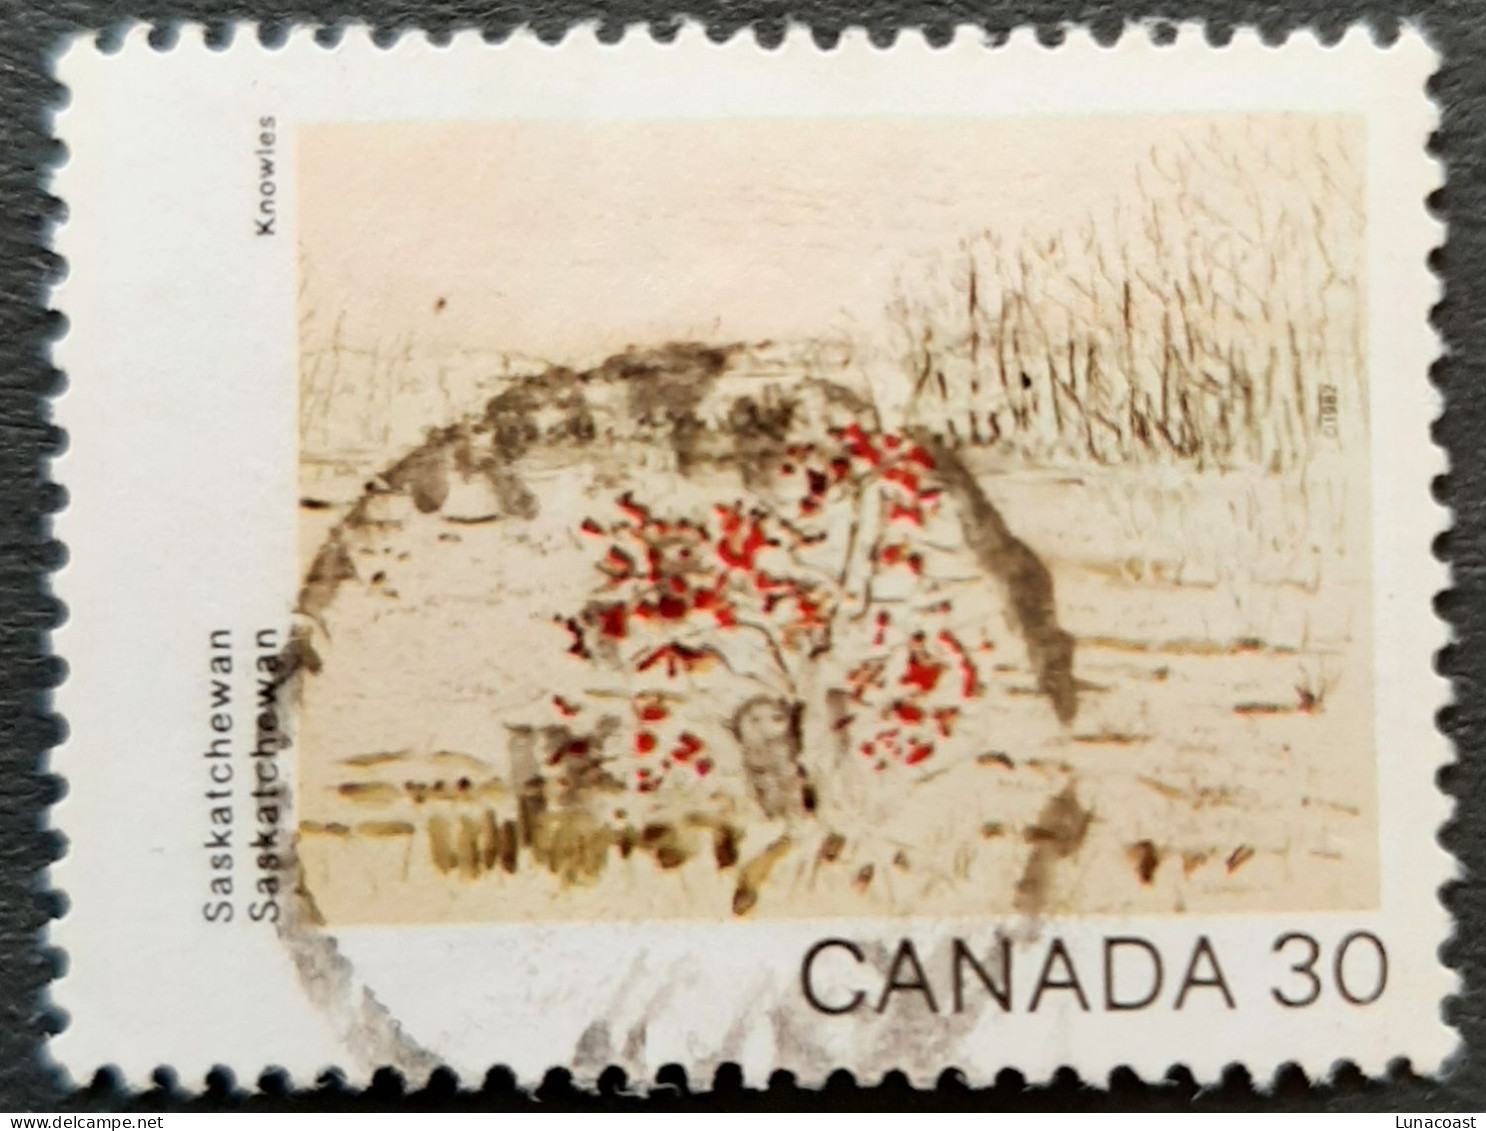 Canada 1982  USED  Sc961,  30c Canada Day, Saskatchewan - Usados